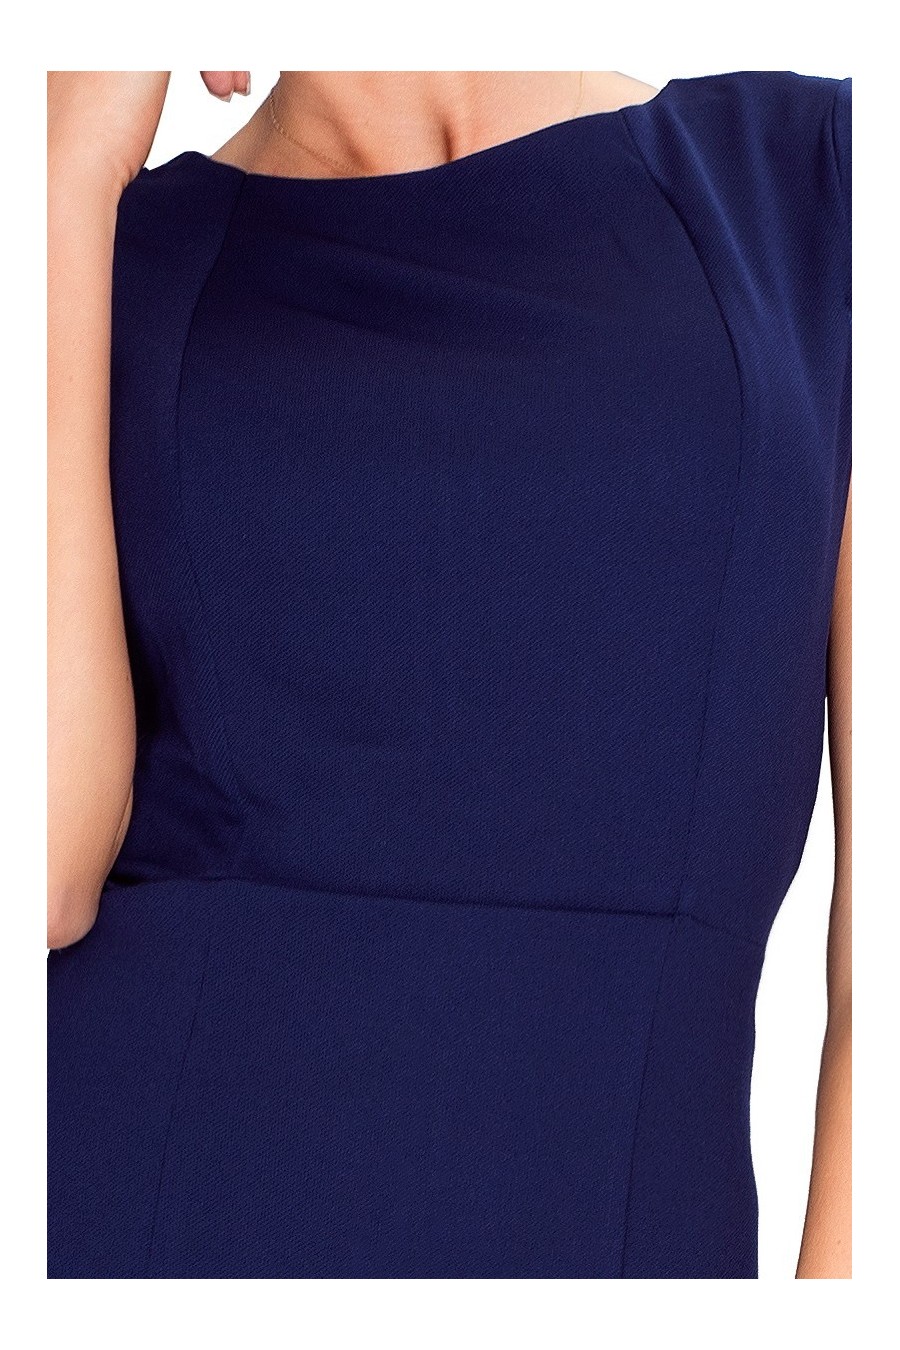 37-2 Elegantní šaty s krátkými rukávy - Tmava Modra